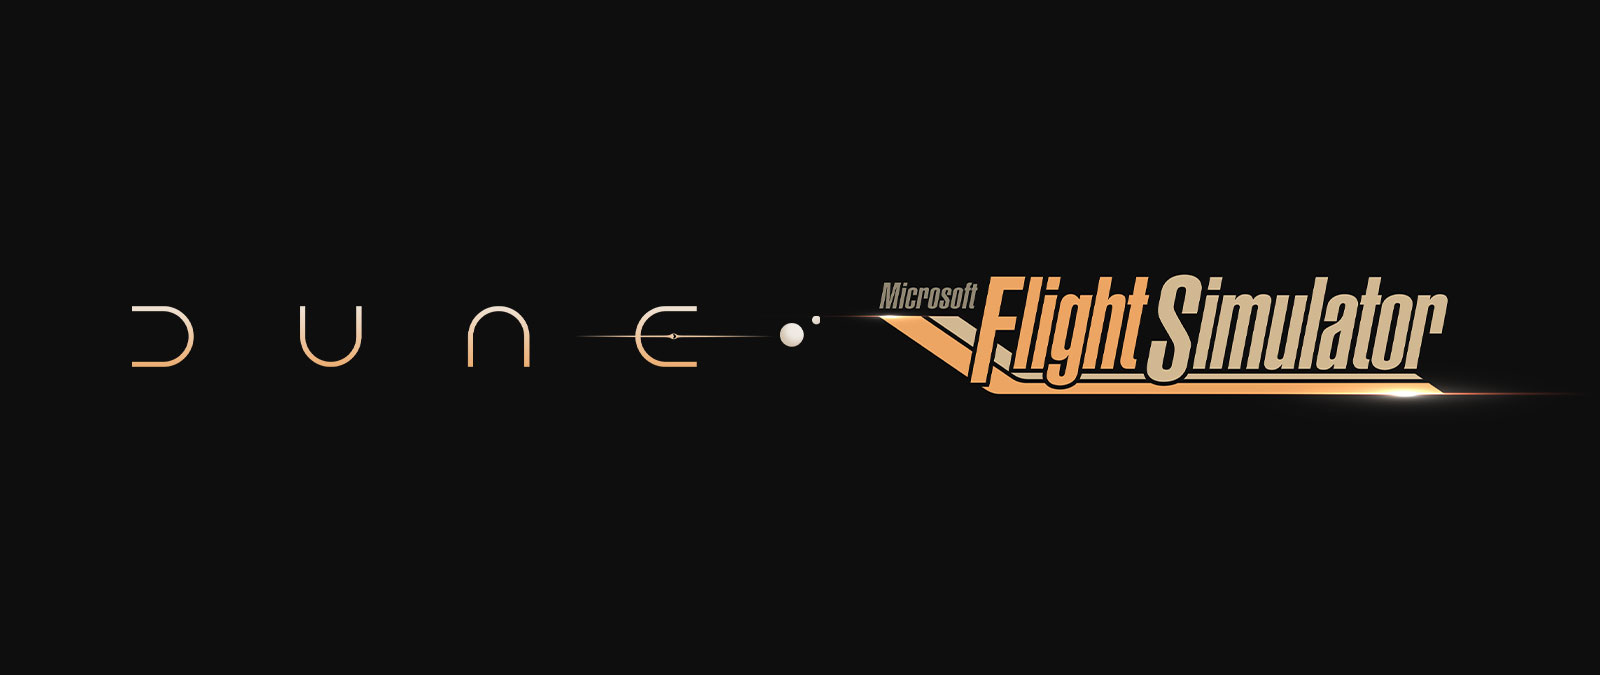 Λογότυπο ταινίας Dune, λογότυπο Microsoft Flight Simulator